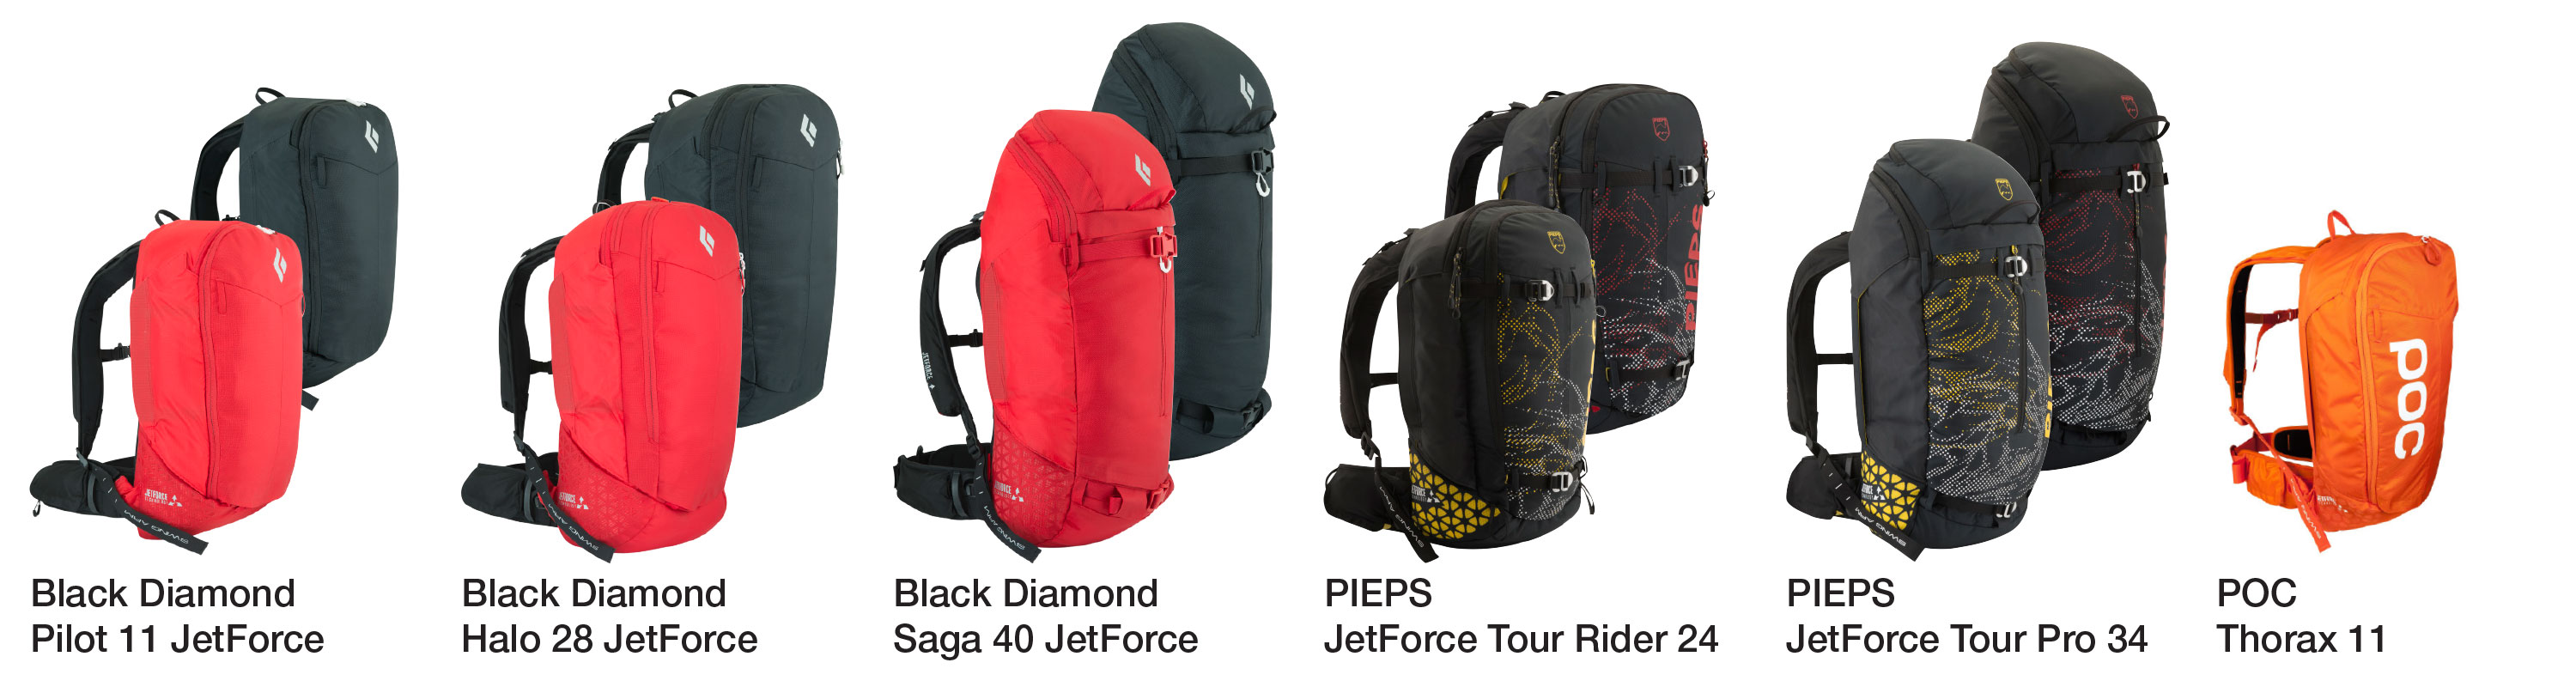 jetforce_packs